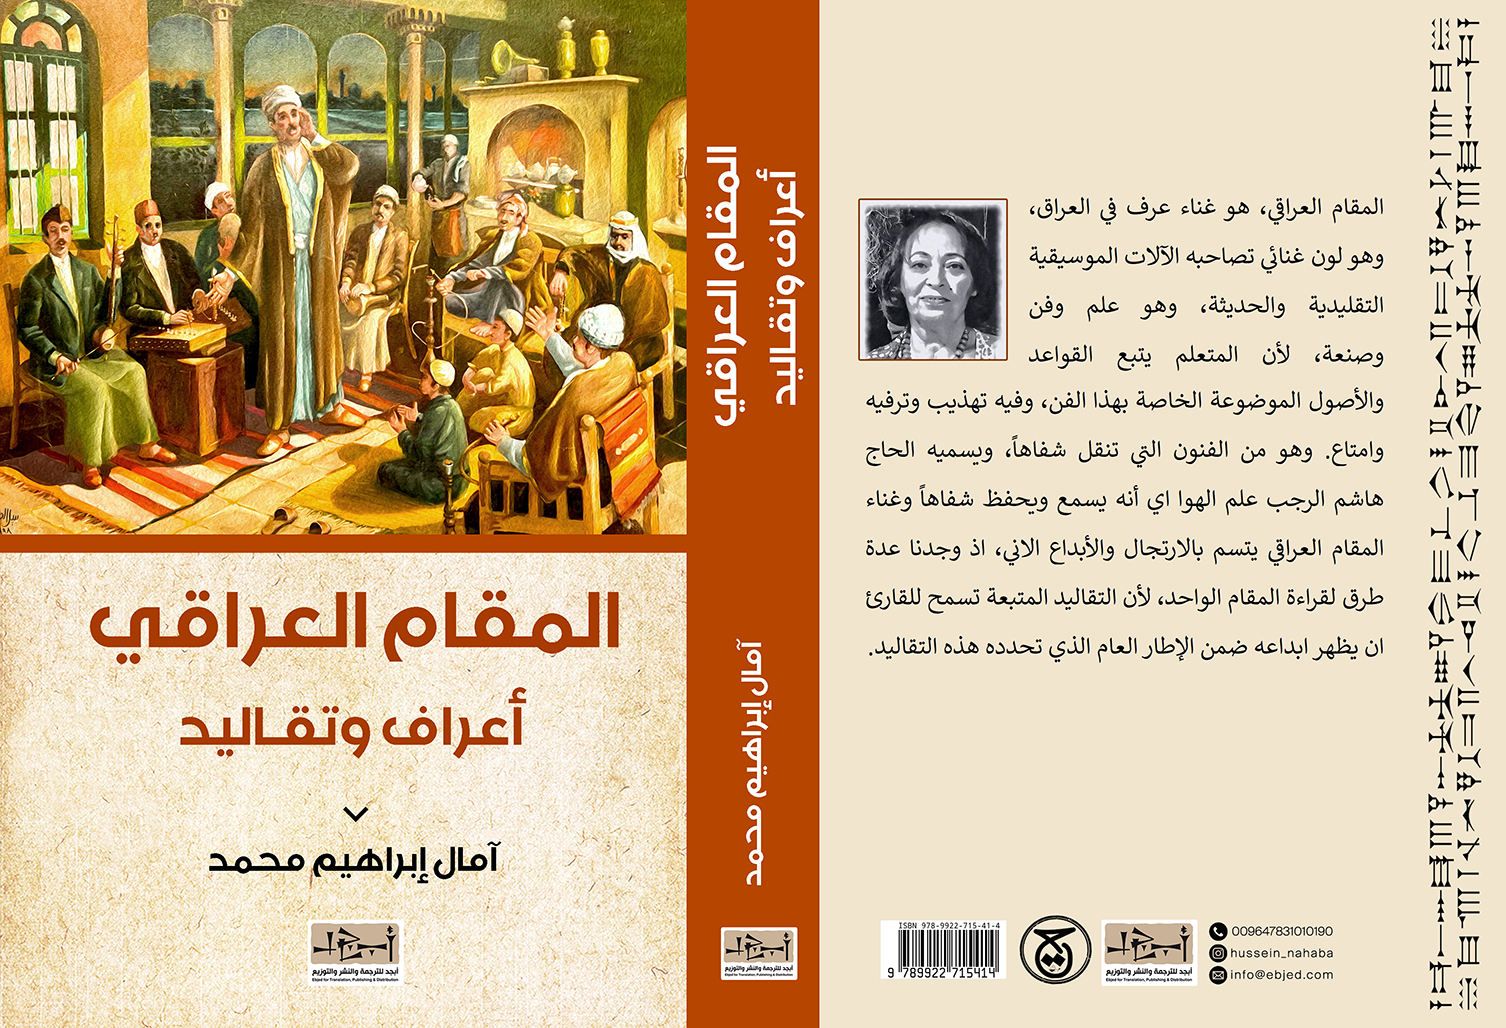 الكتاب: المقام العراقي أعراف وتقاليد تأليف: آمال إبراهيم محمد التصنيف: تاريخ